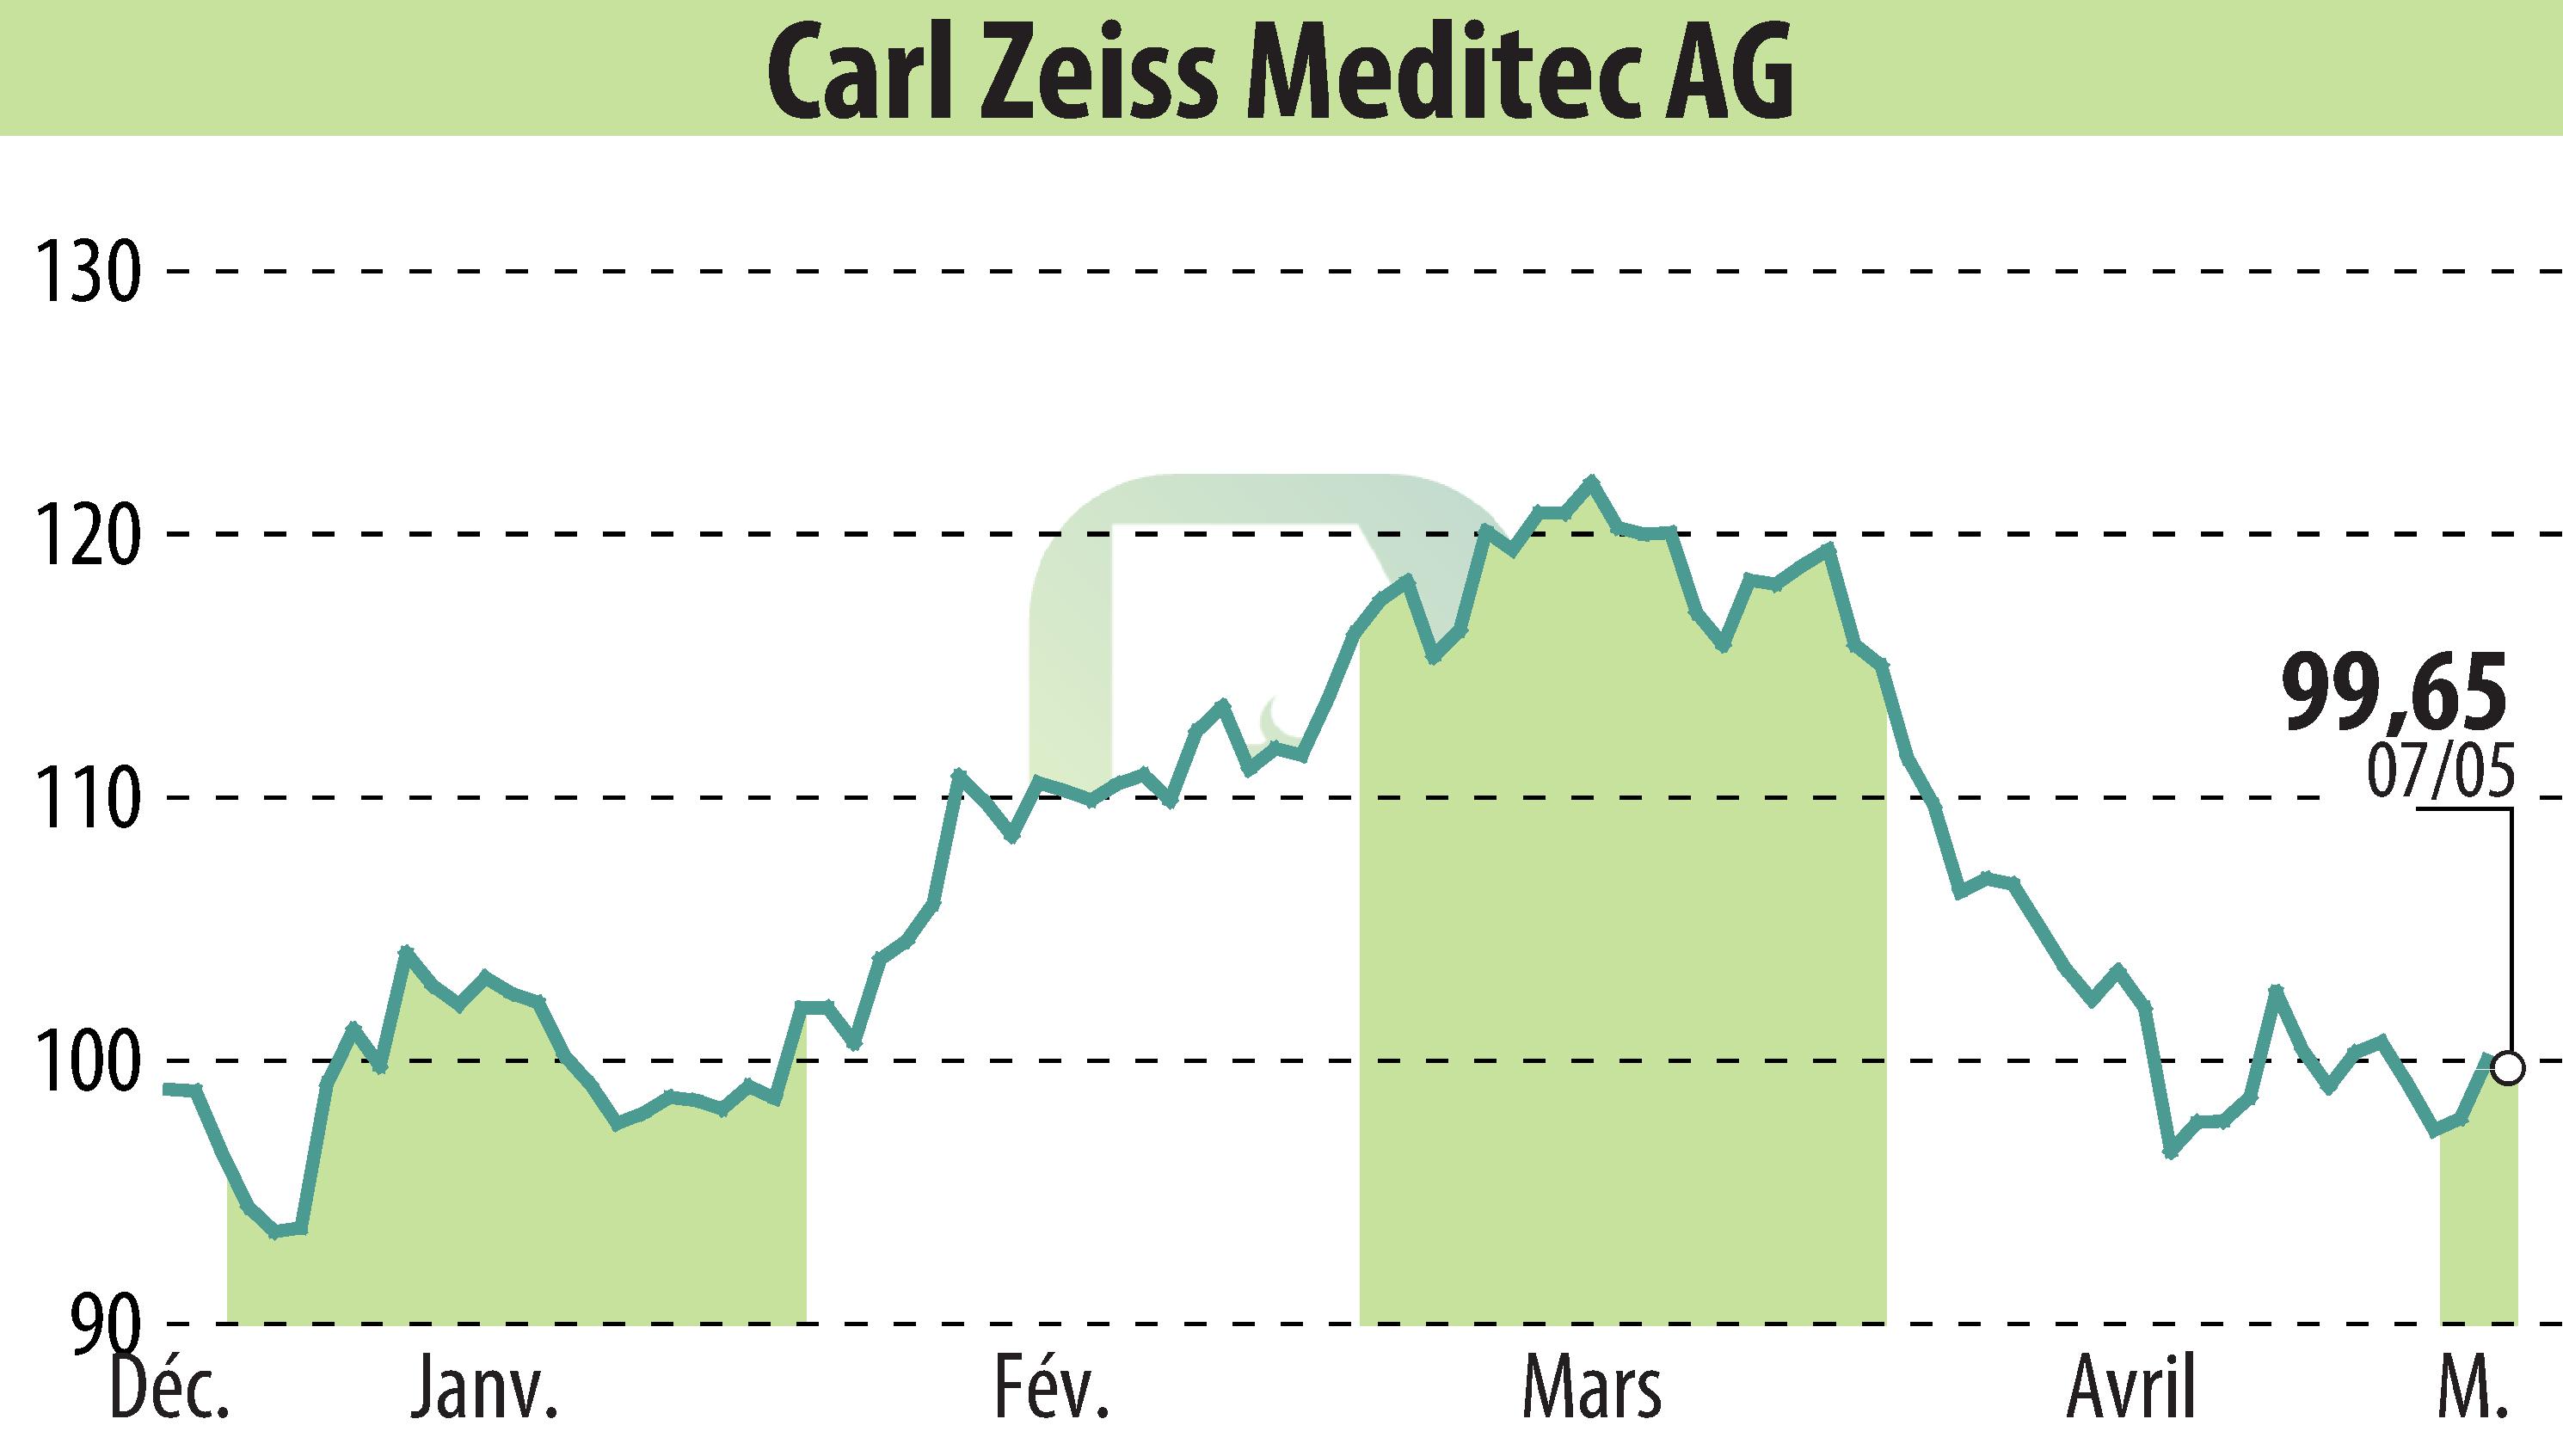 Graphique de l'évolution du cours de l'action Carl Zeiss Meditec AG (EBR:AFX).